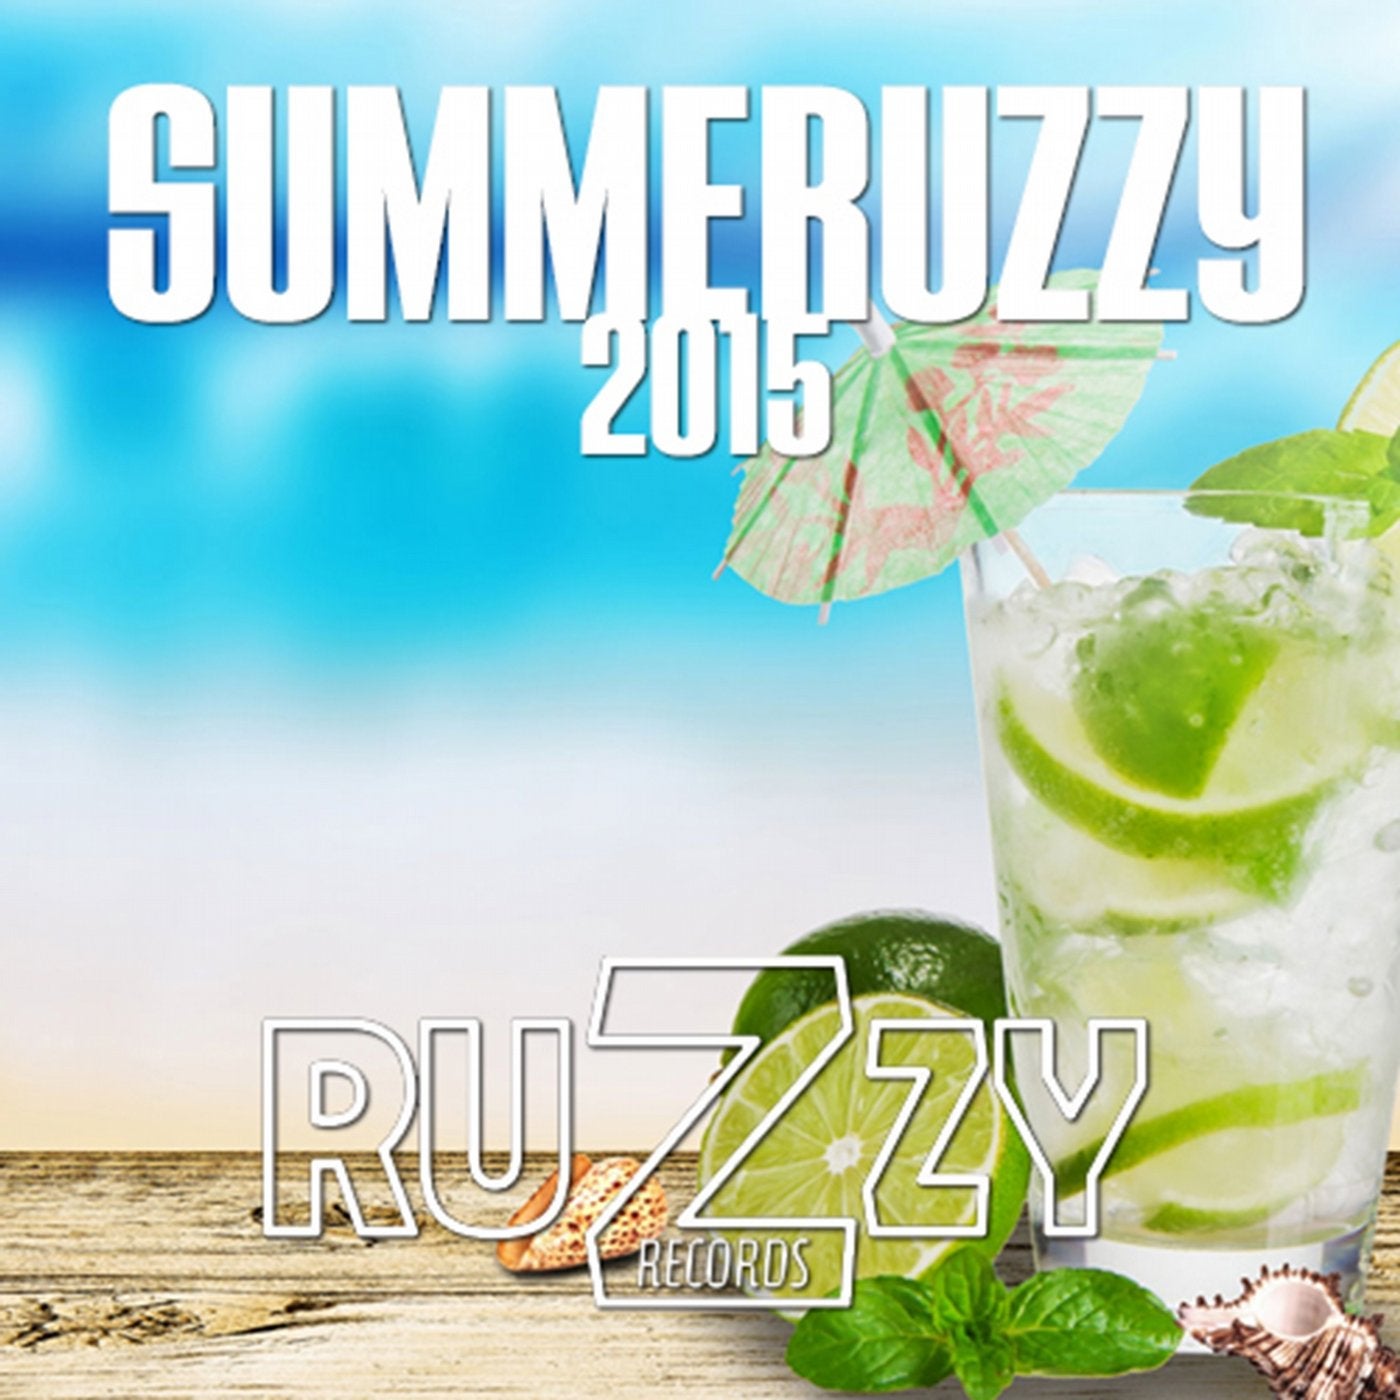 Summeruzzy 2015